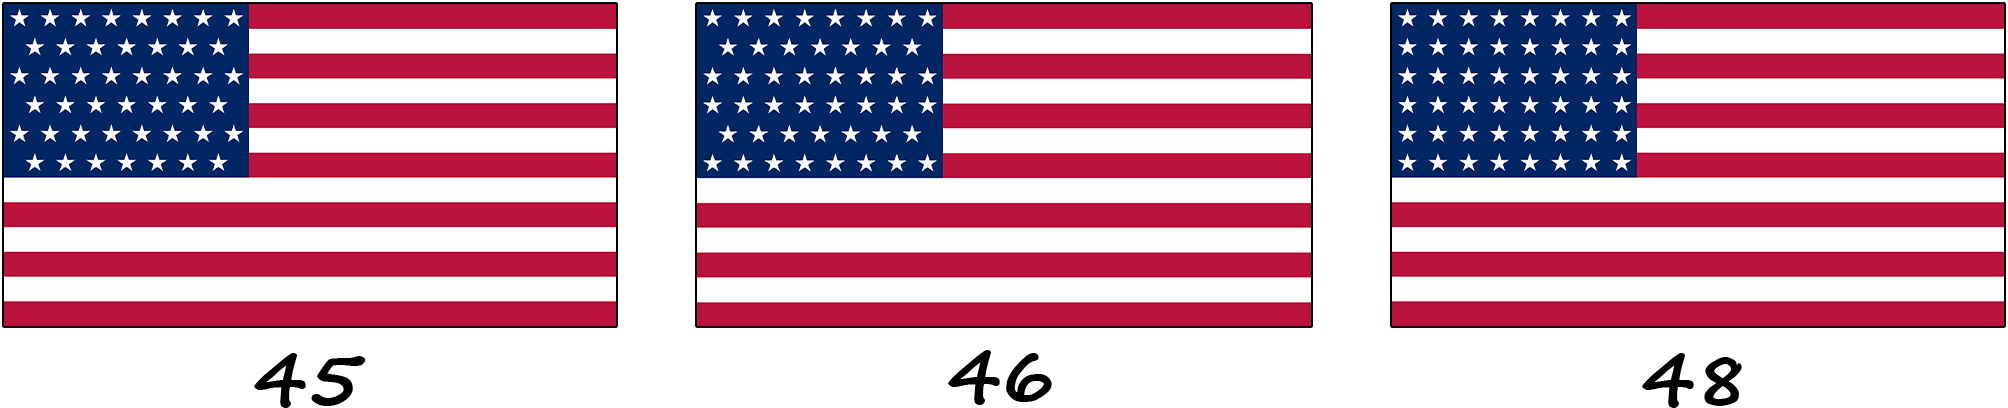 Le drapeau de Porto Rico sous la domination américaine